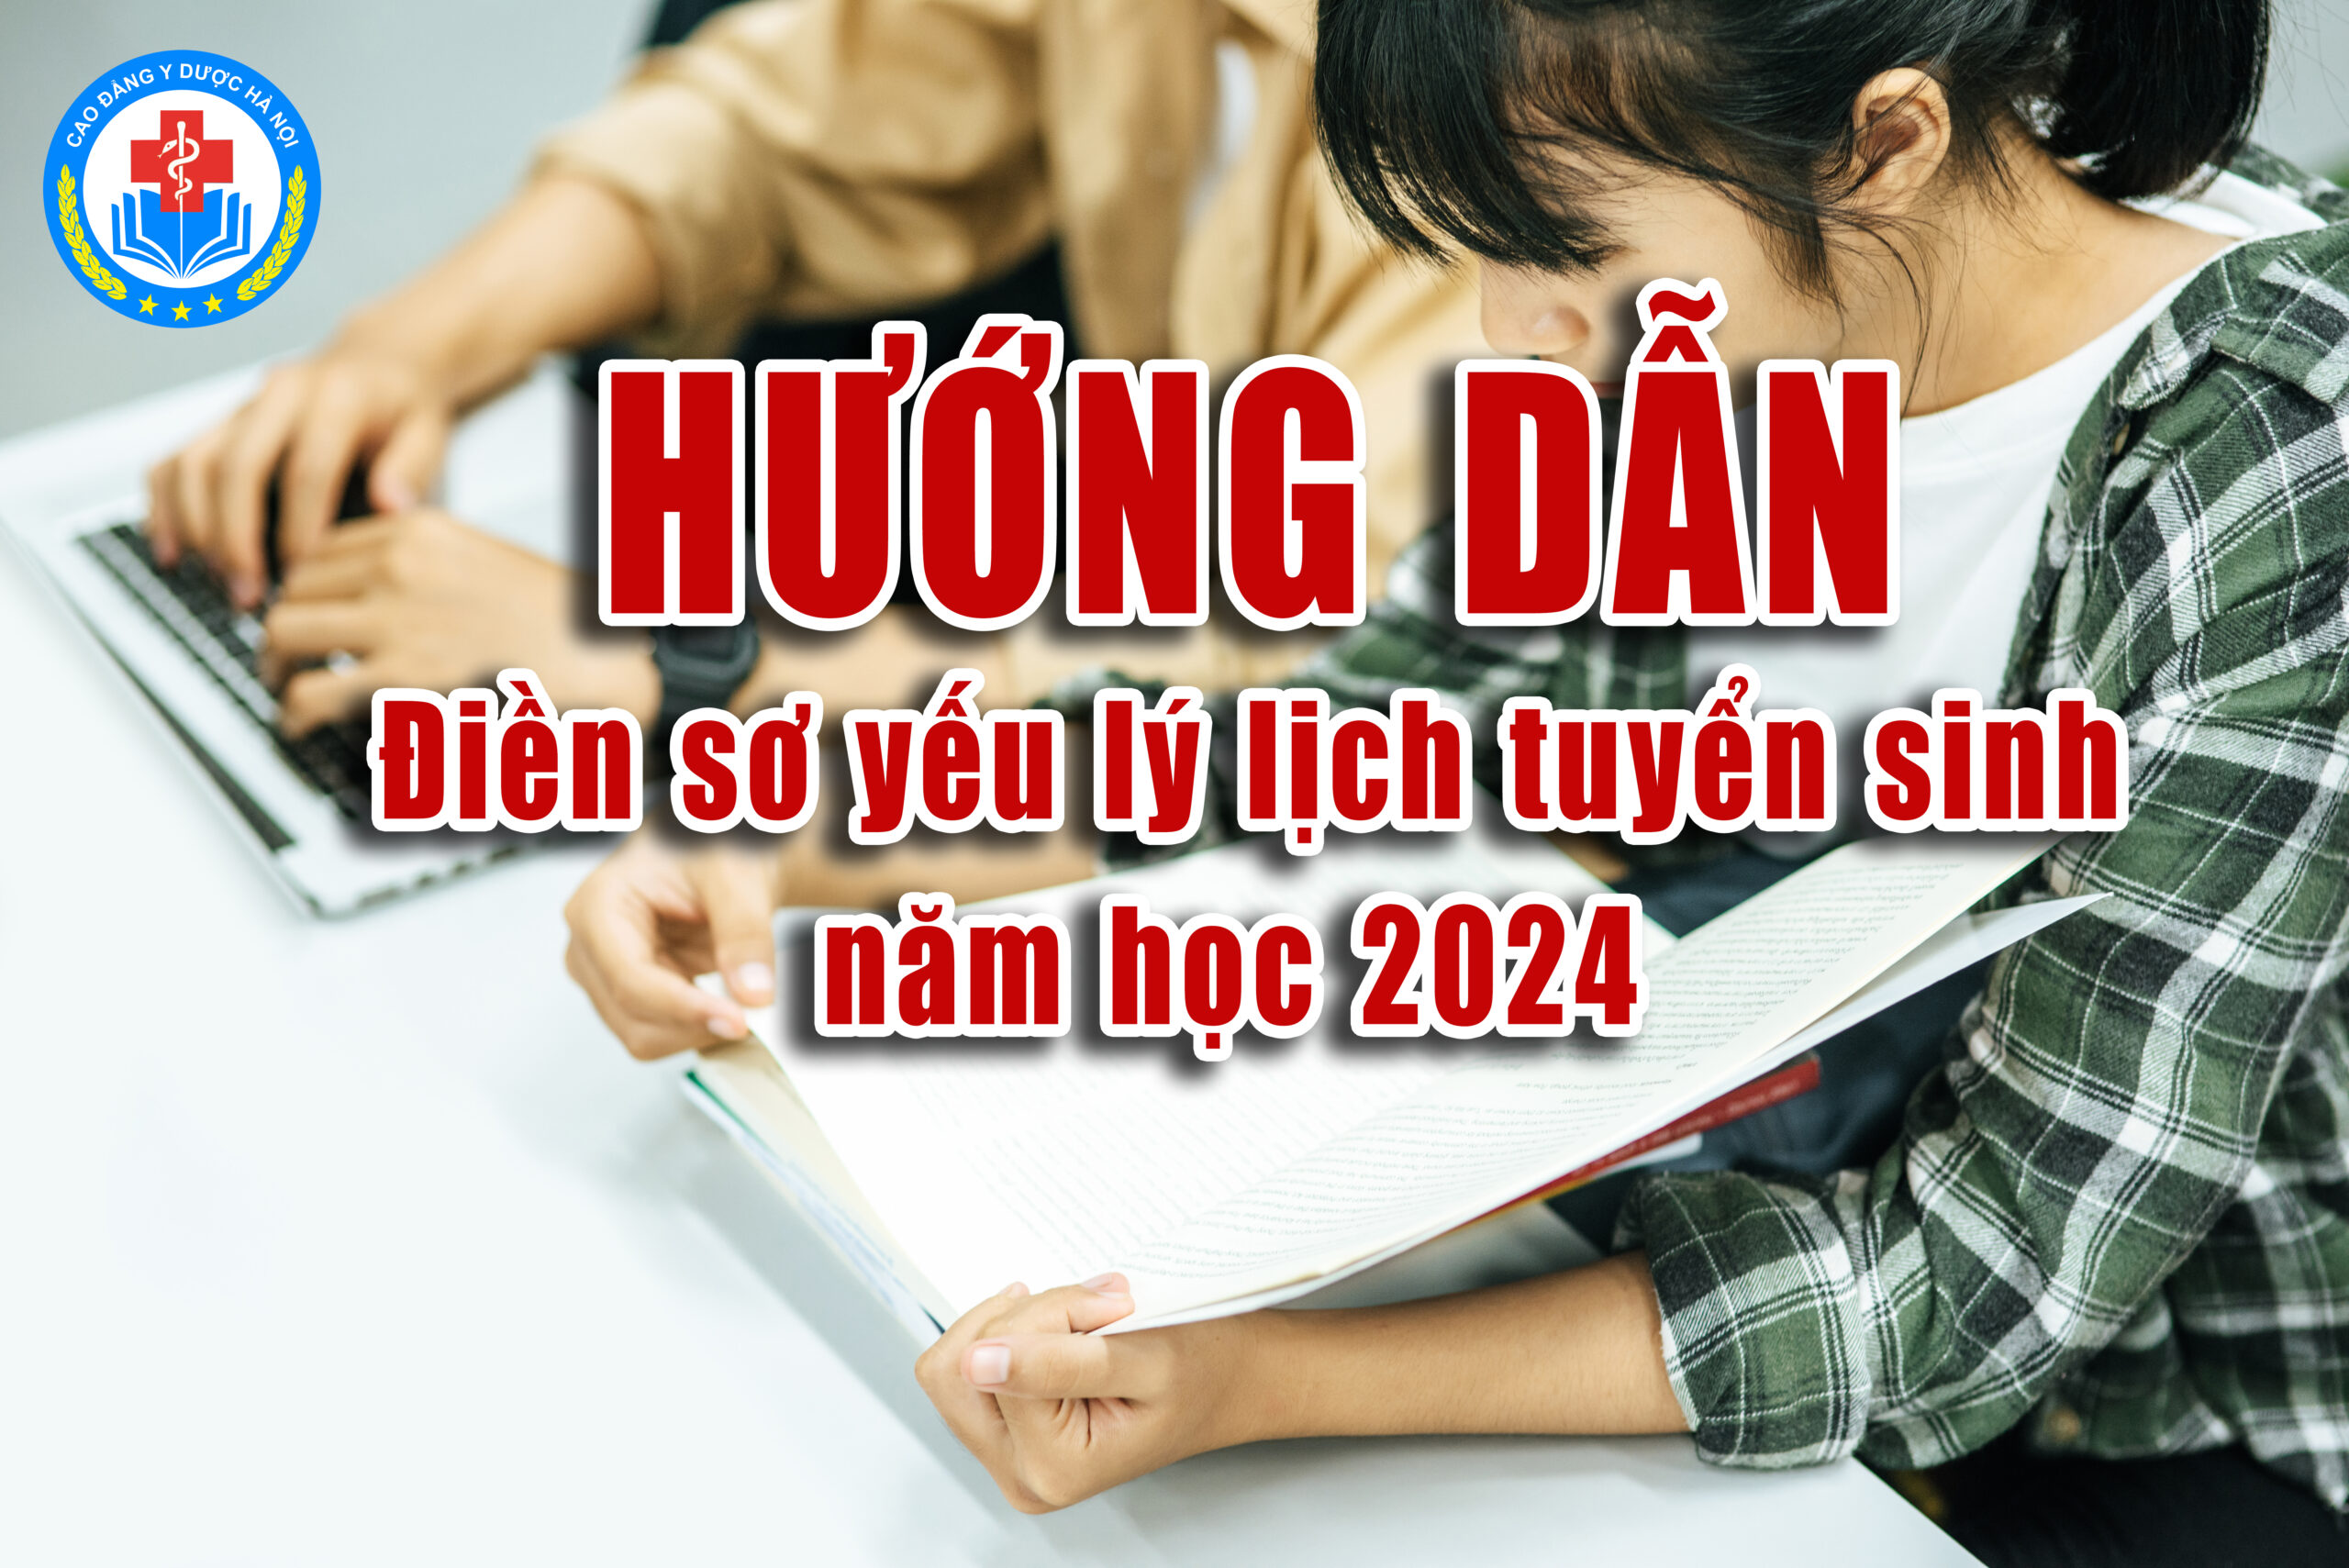 HƯỚNG DẪN: Điền sơ yếu lý lịch tuyển sinh năm học 2024